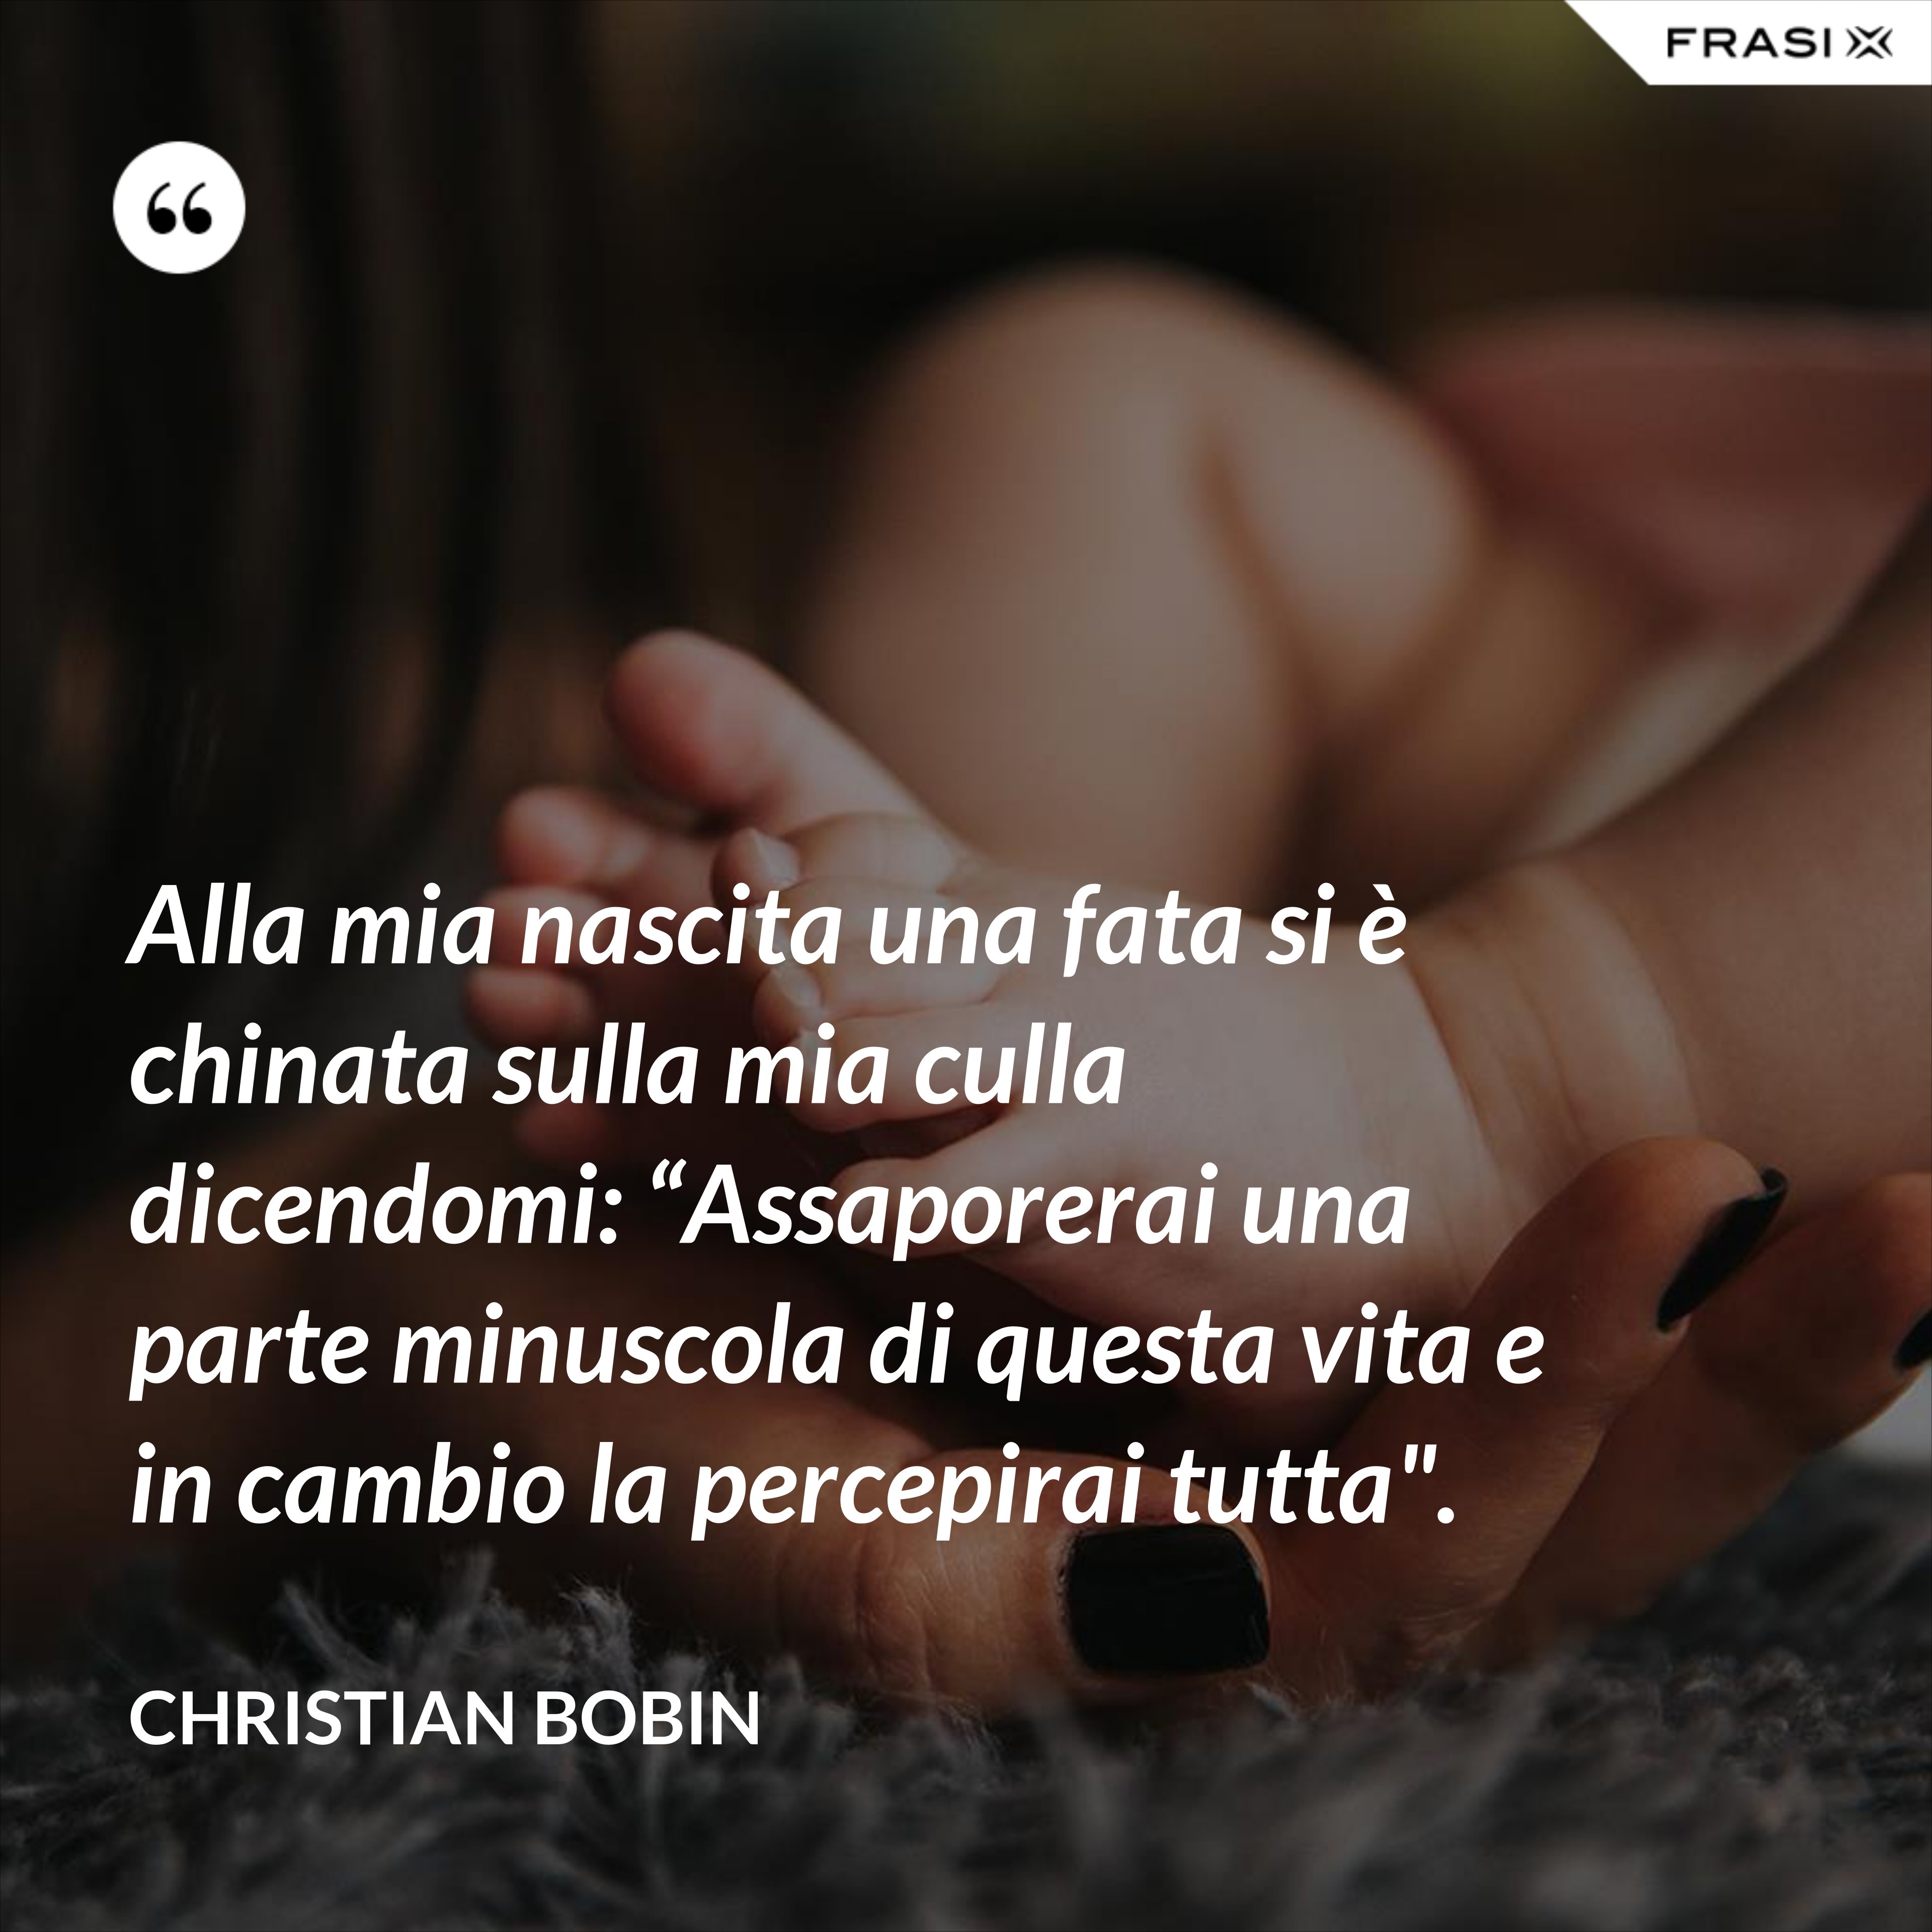 Alla mia nascita una fata si è chinata sulla mia culla dicendomi: “Assaporerai una parte minuscola di questa vita e in cambio la percepirai tutta". - Christian Bobin